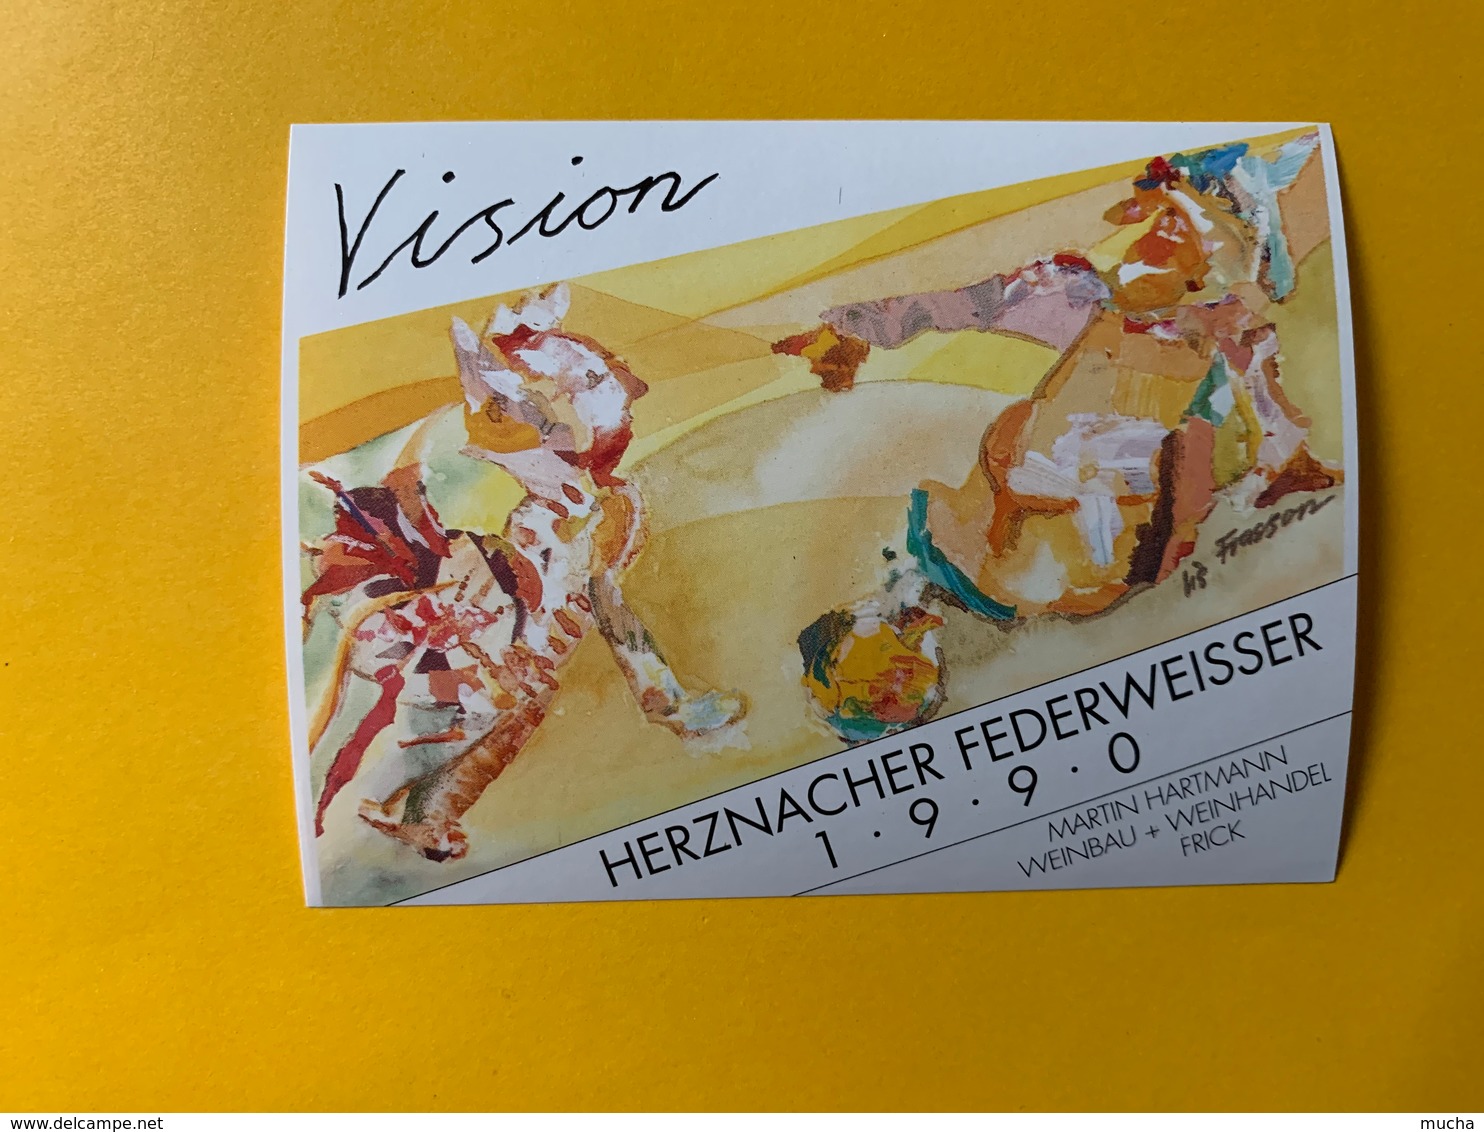 13736 - Vision Herznacher Federweisser 1990 - Kunst